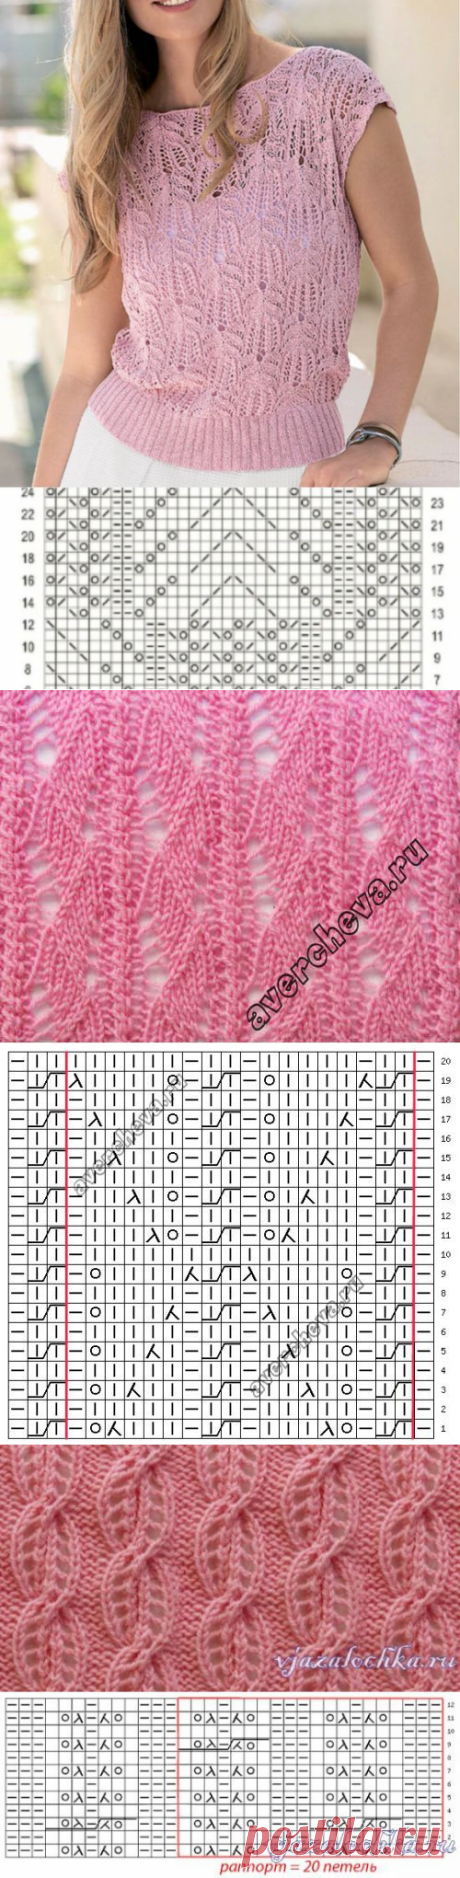 Узоры спицами - 25 идей в оттенках розового | Вязание, рукоделие, хобби | Яндекс Дзен